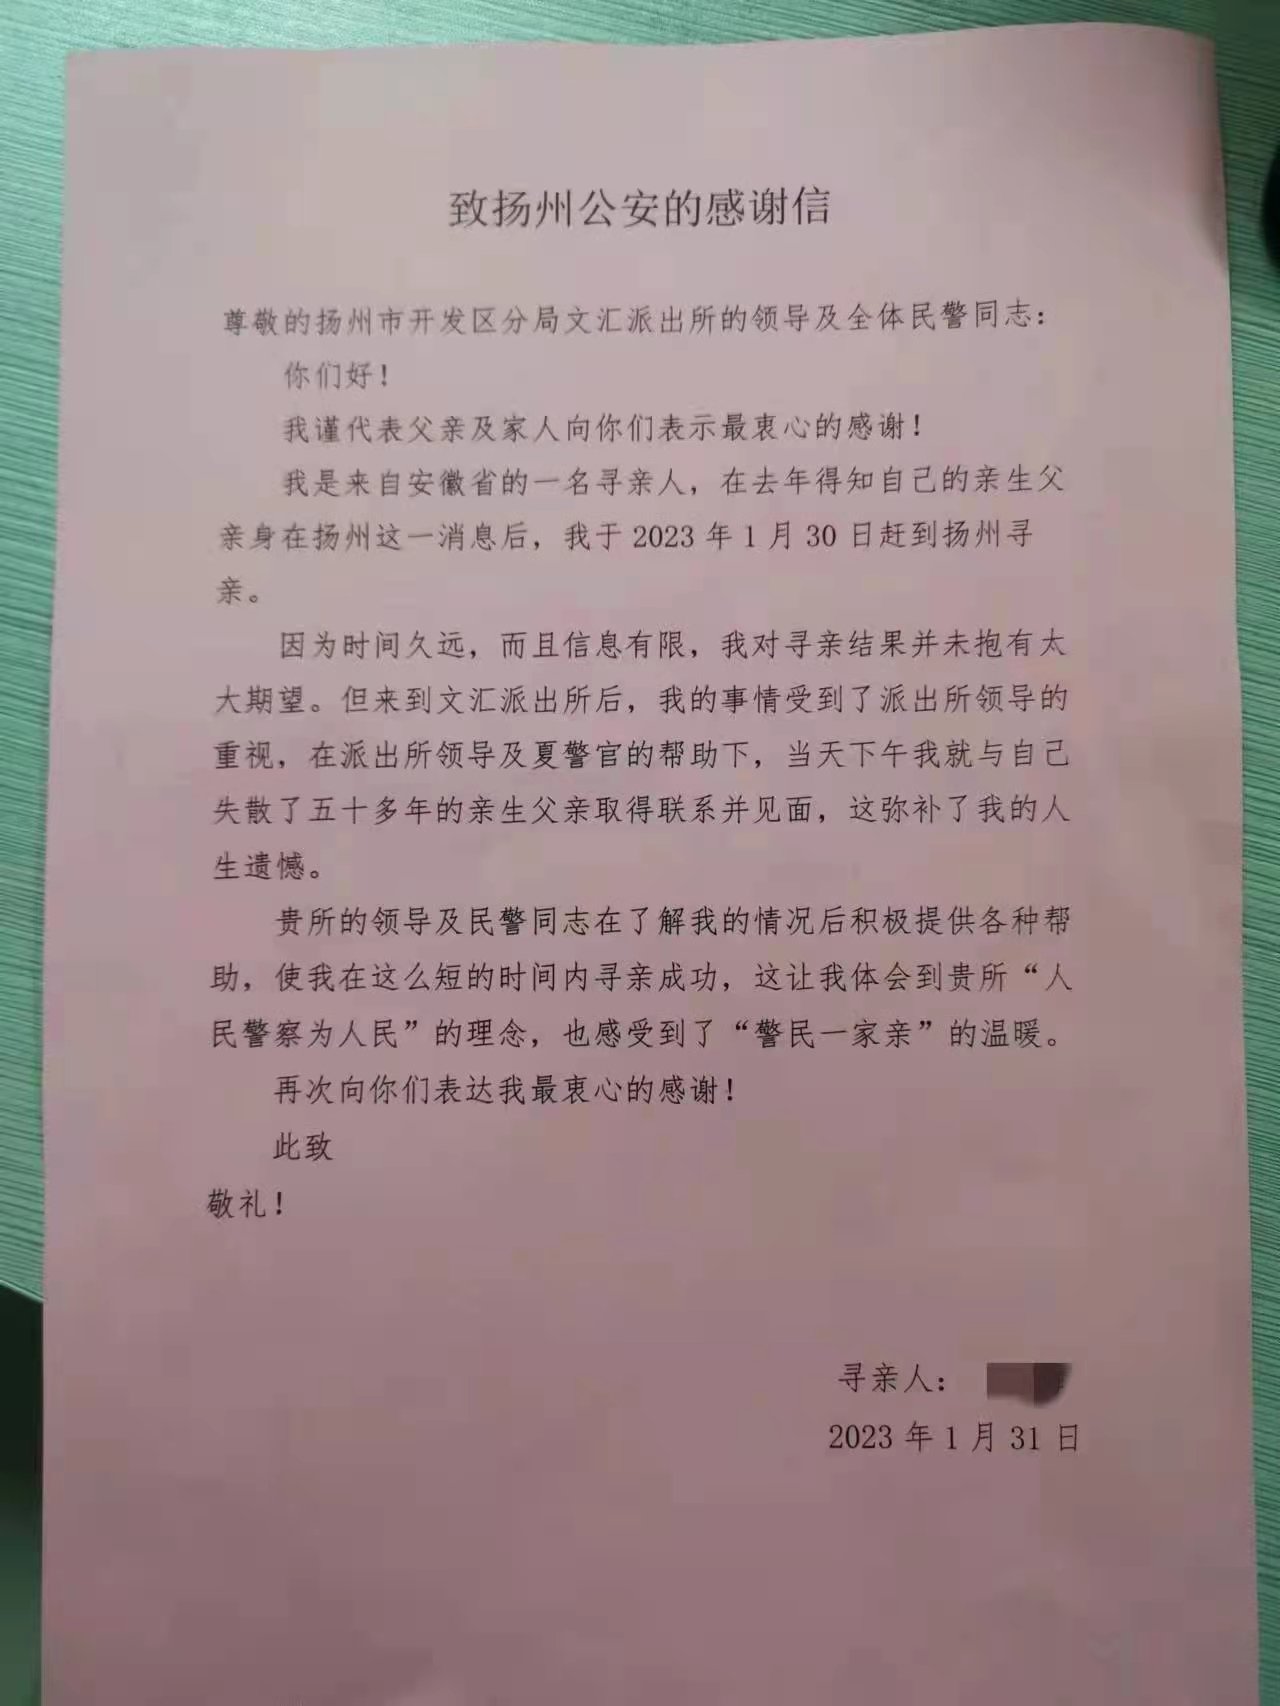 事后吴阿姨专门给派出所写了一封感谢信。